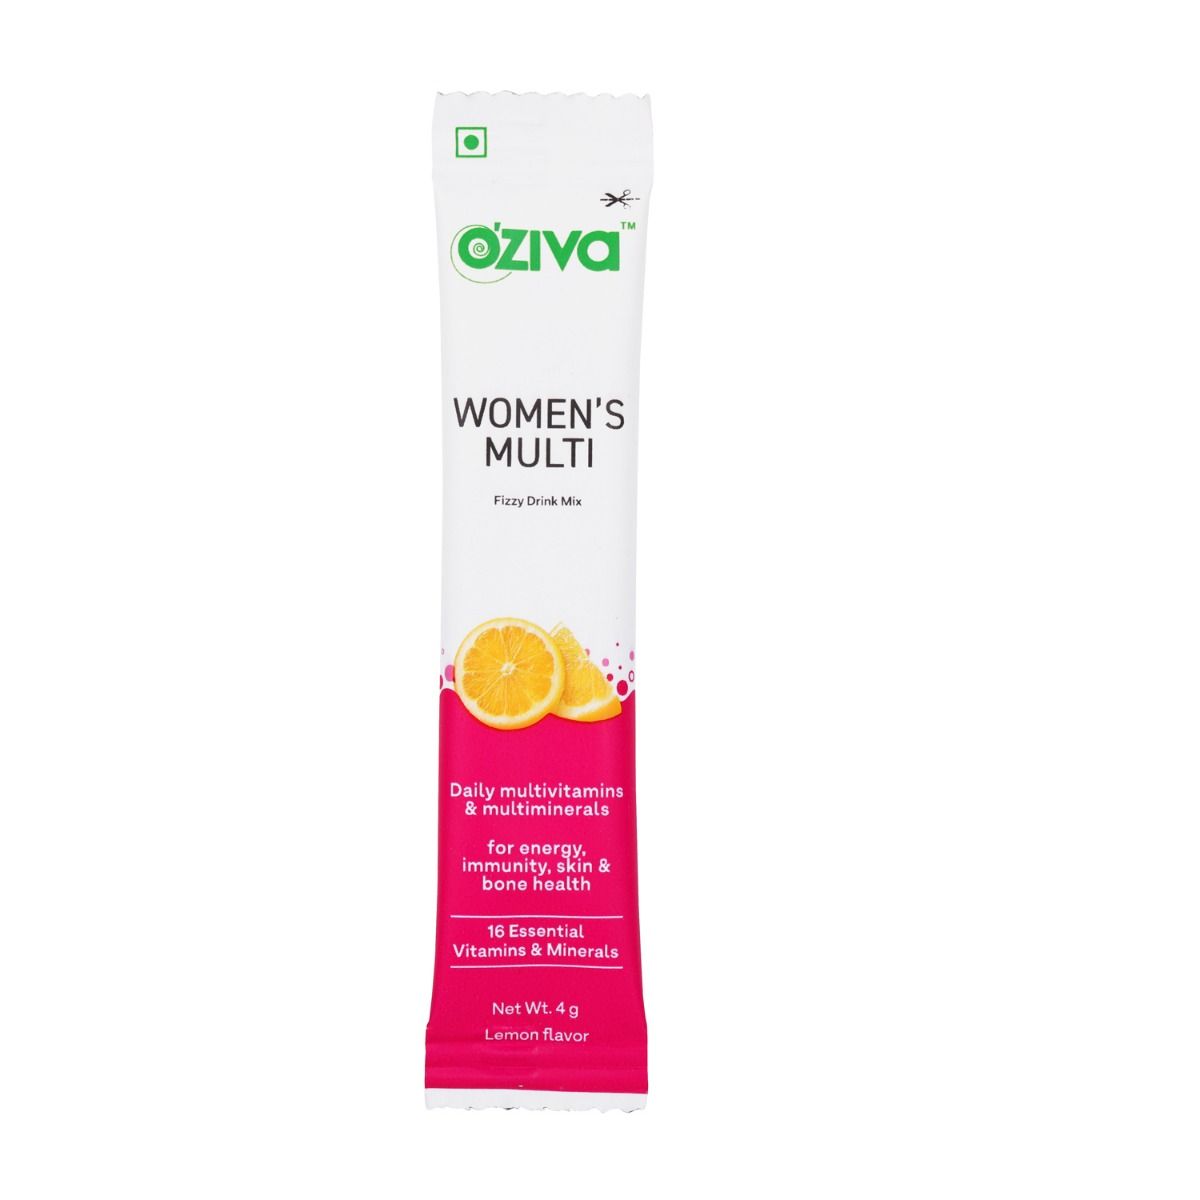 OZiva Women's Multi Fizzy Drink, 6 Sachets (6x4 gm), Pack of 1 